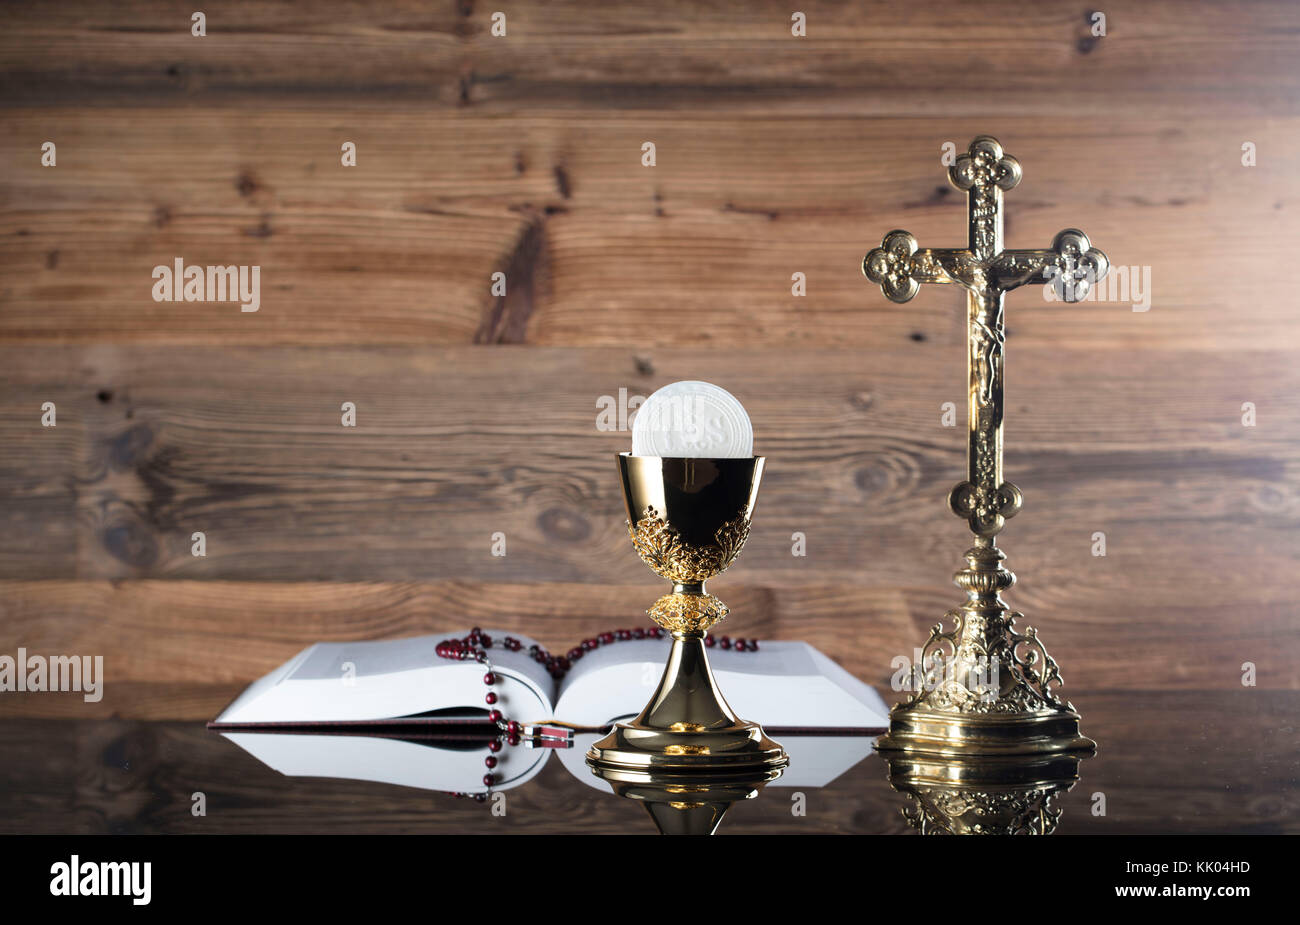 Catholic religion theme. Holy communion concept. Stock Photo